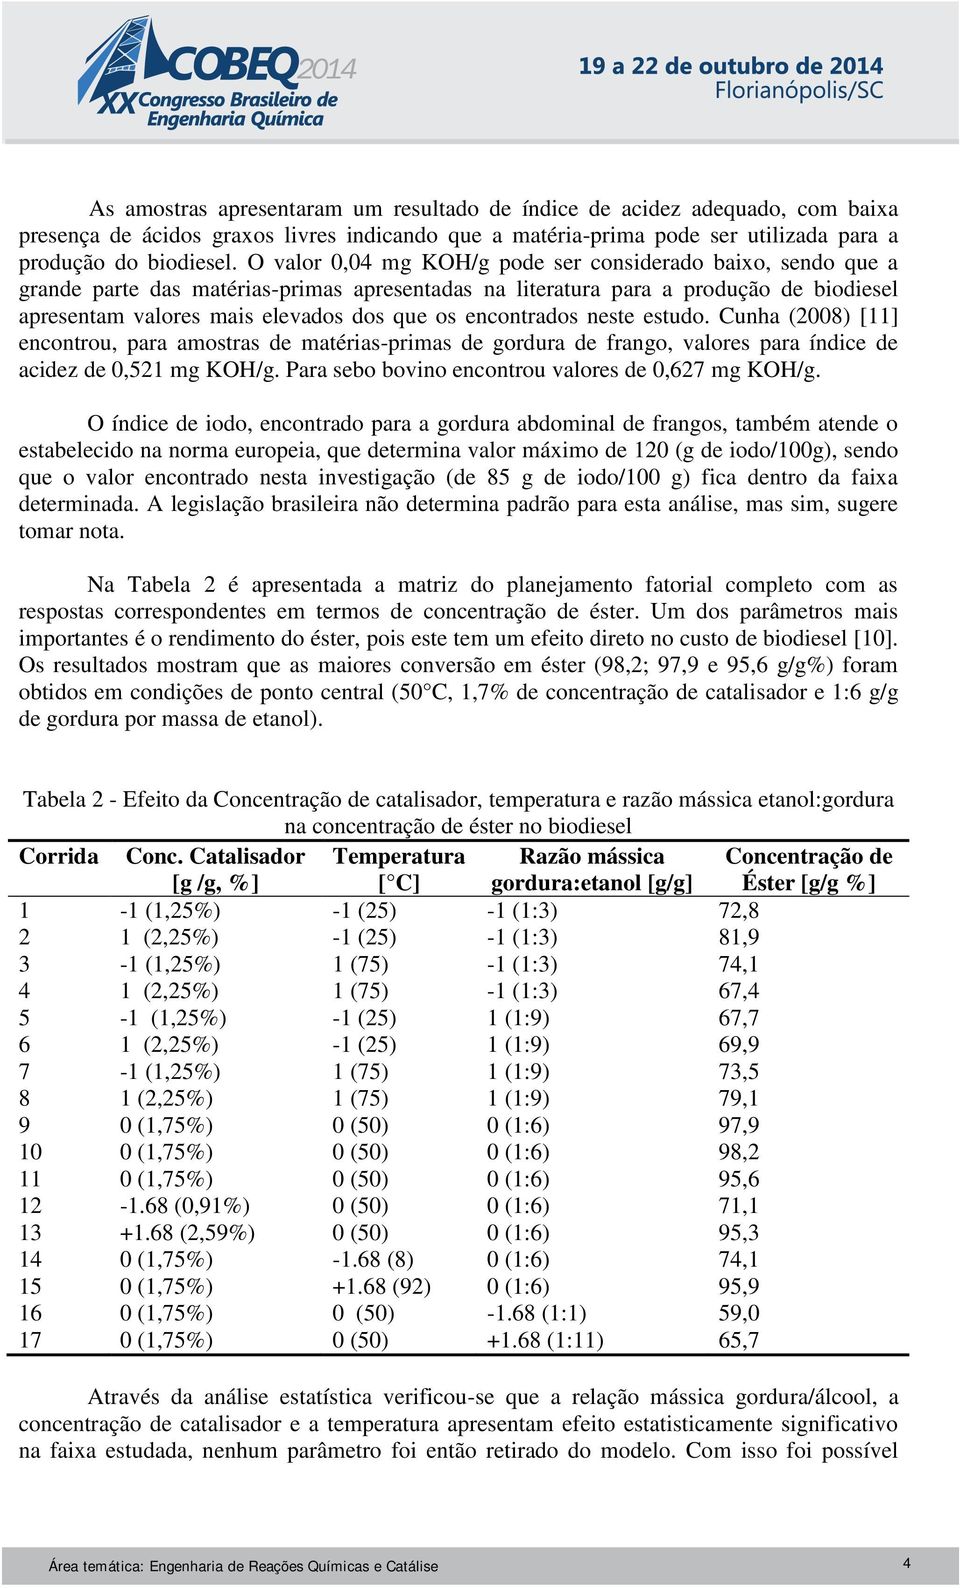 encontrados neste estudo. Cunha (2008) [11] encontrou, para amostras de matérias-primas de gordura de frango, valores para índice de acidez de 0,521 mg KOH/g.